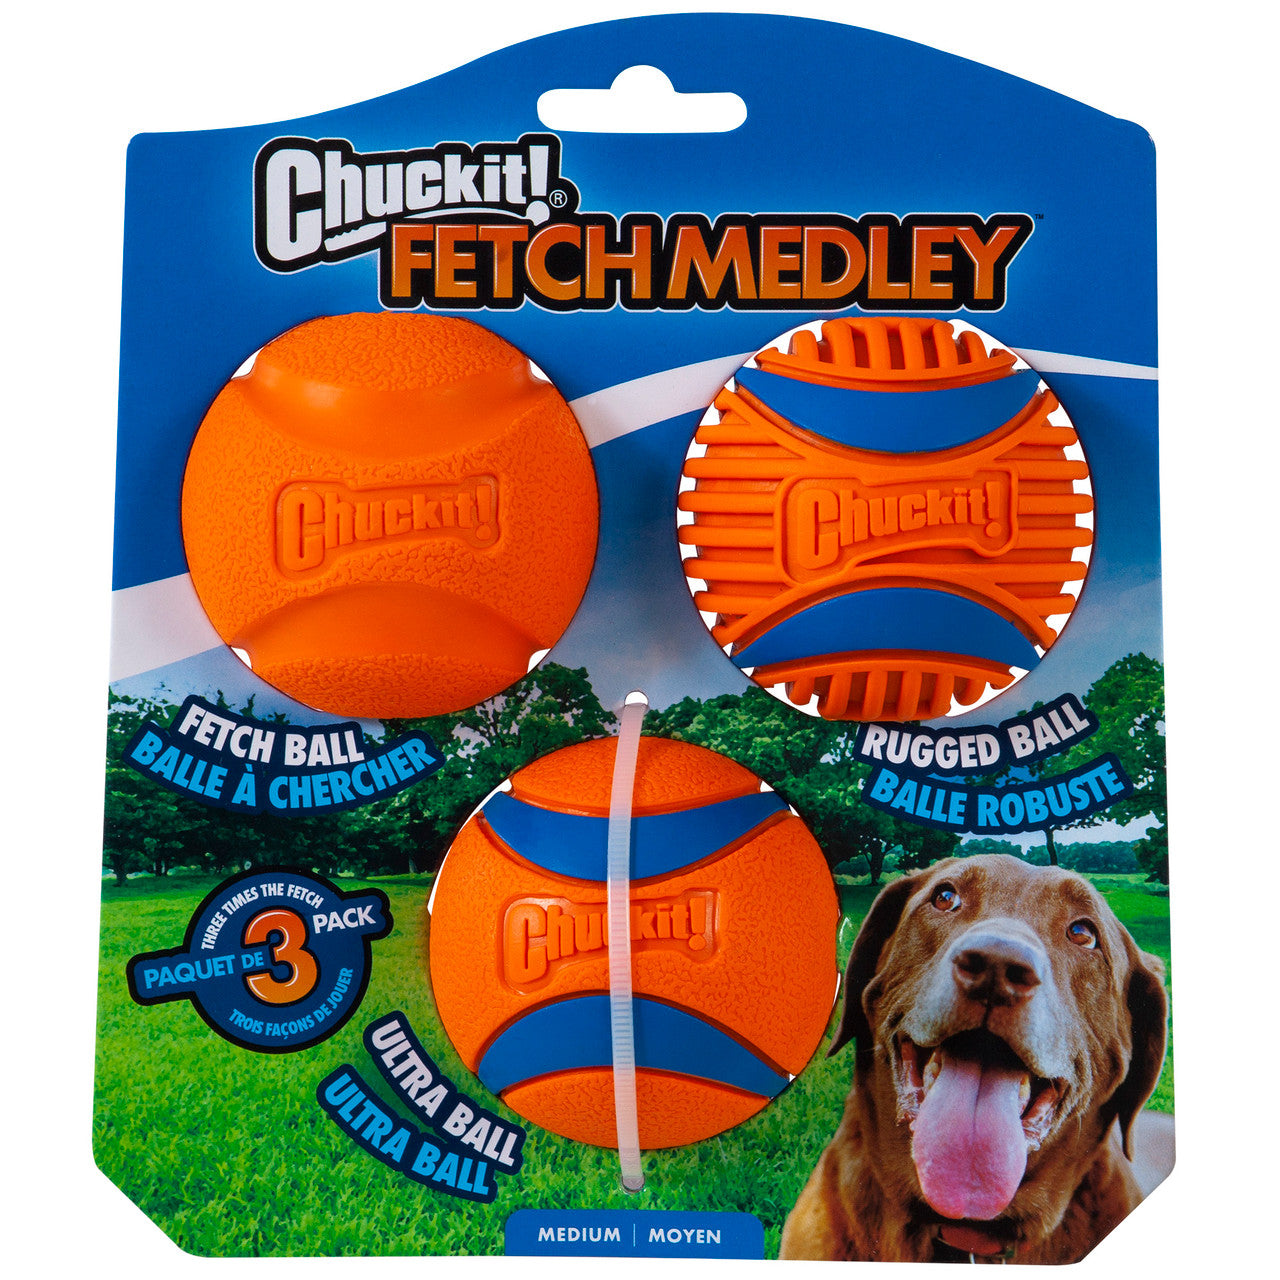 Chuckit! Fetch Medley Balls Gen 3 Dog Toy MD